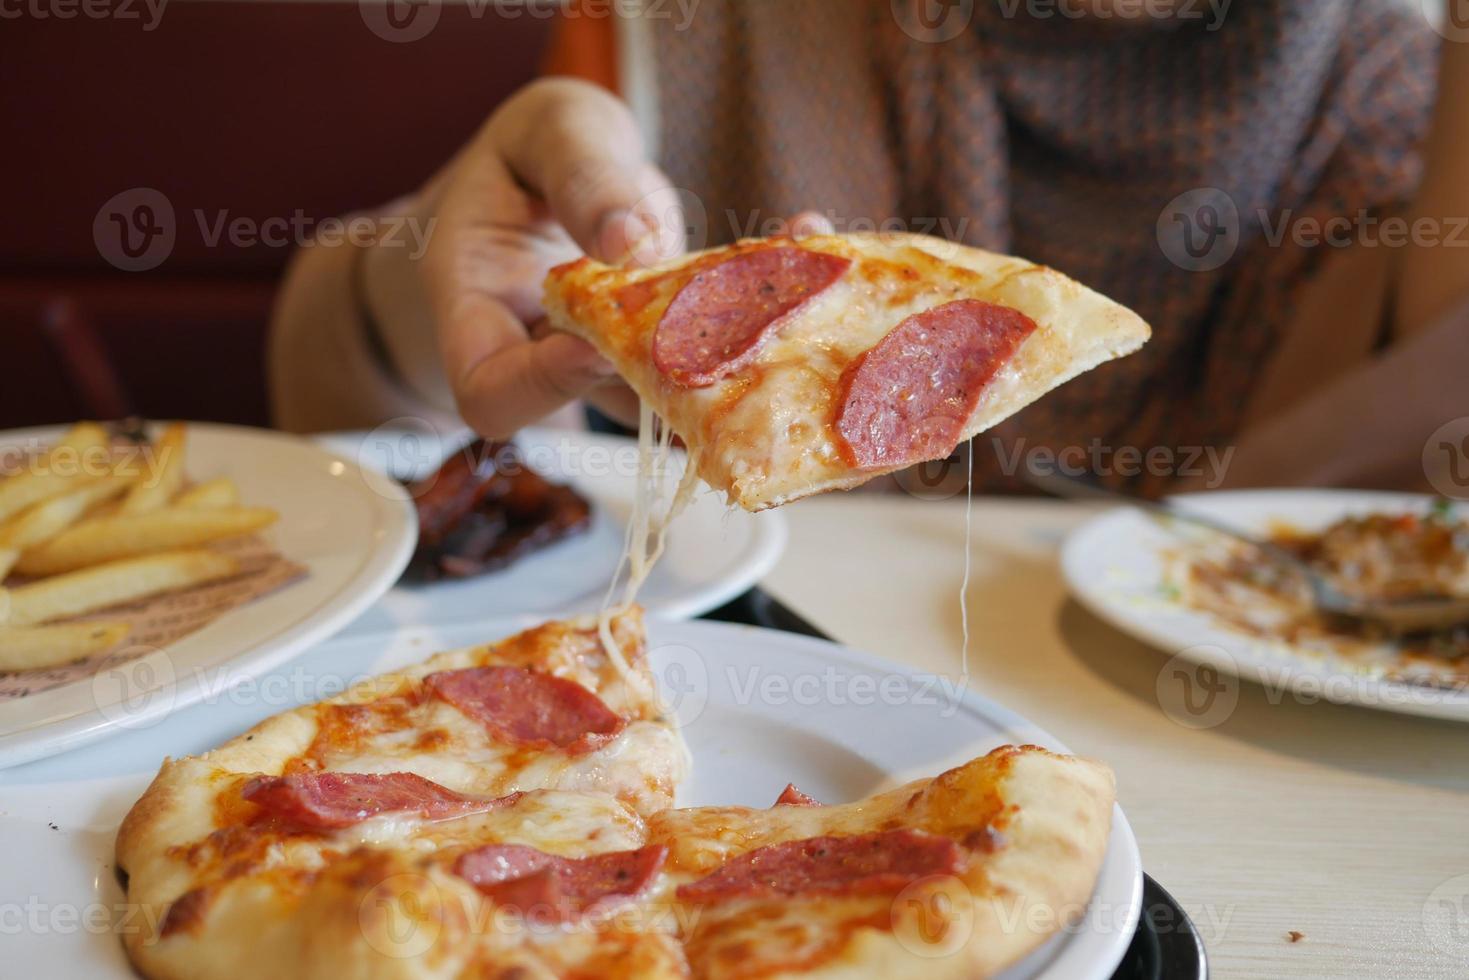 vrouwen die met de hand een stuk pizza van een bord plukken foto